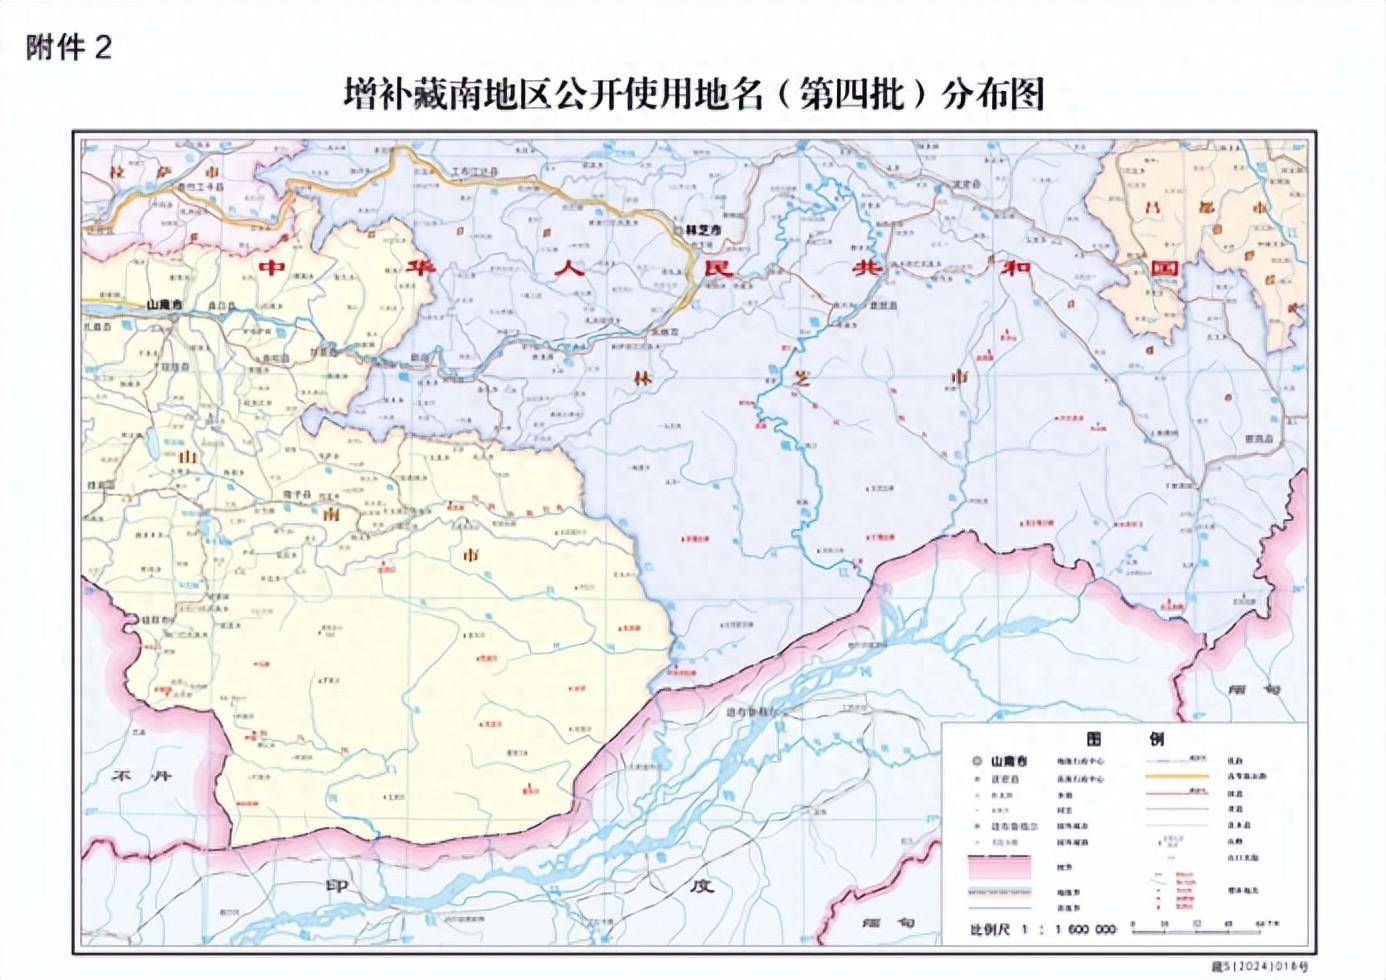 藏南地区图图片